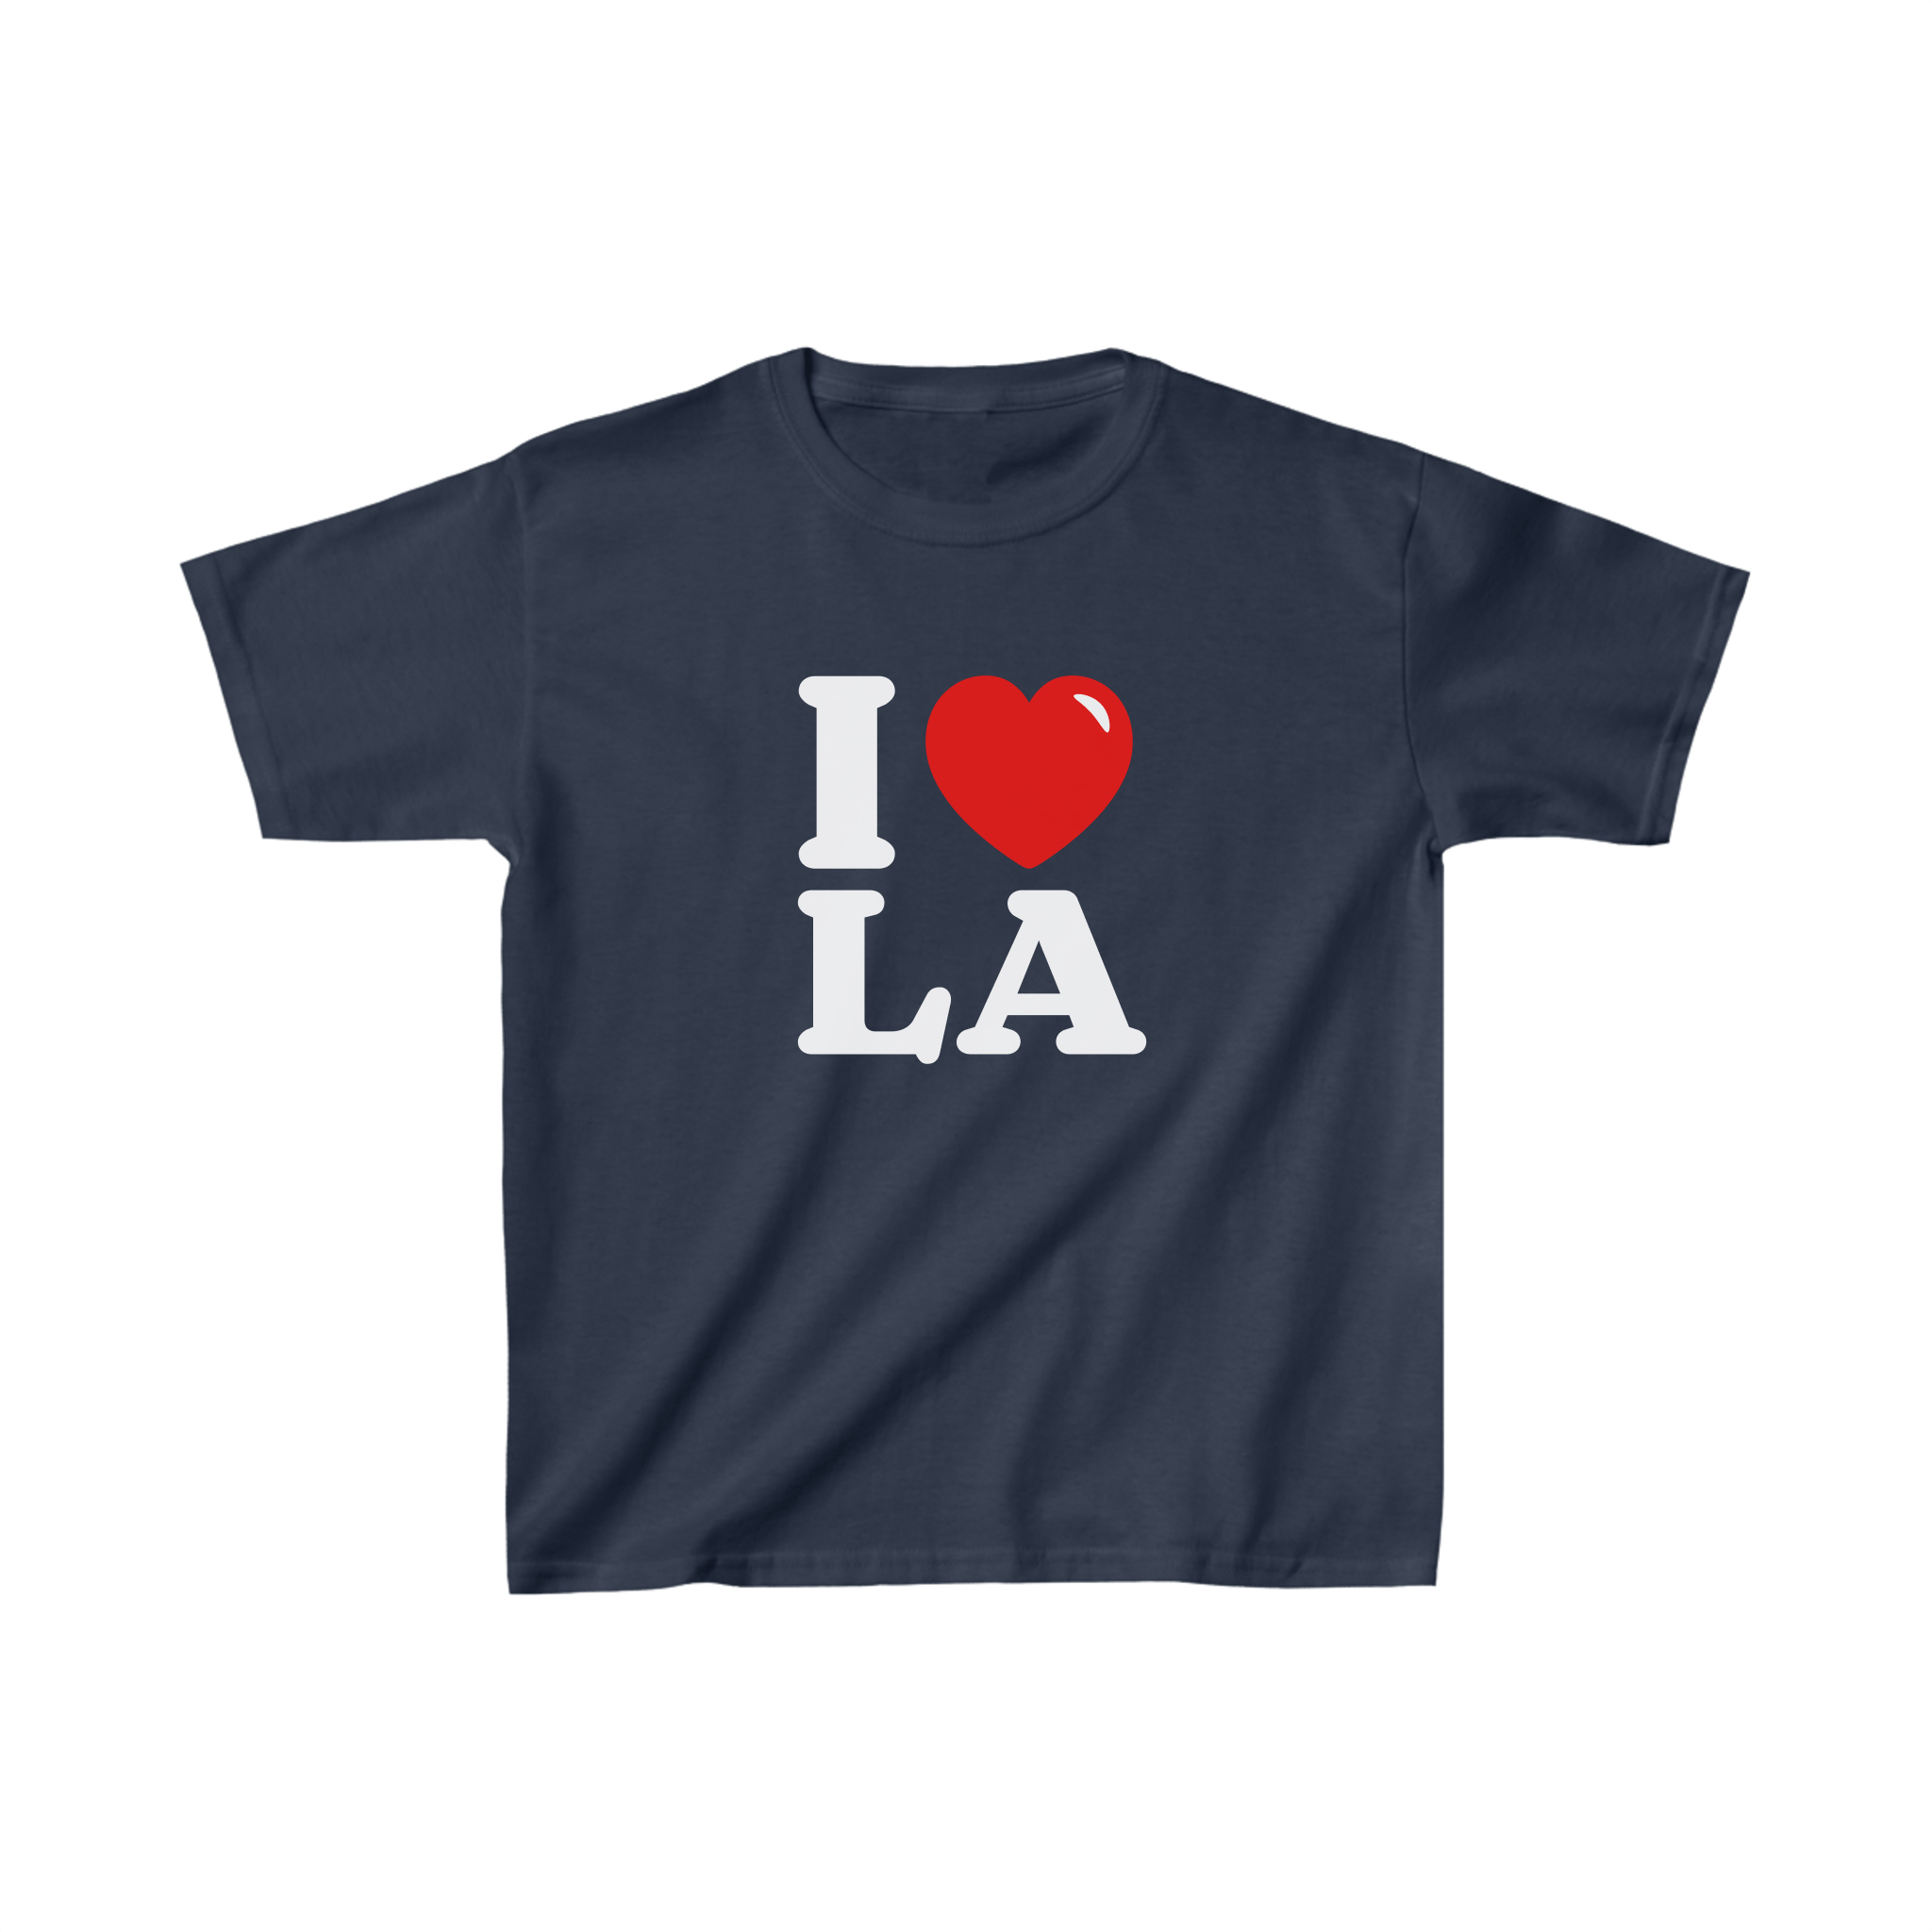 'I love LA' baby tee - In Print We Trust